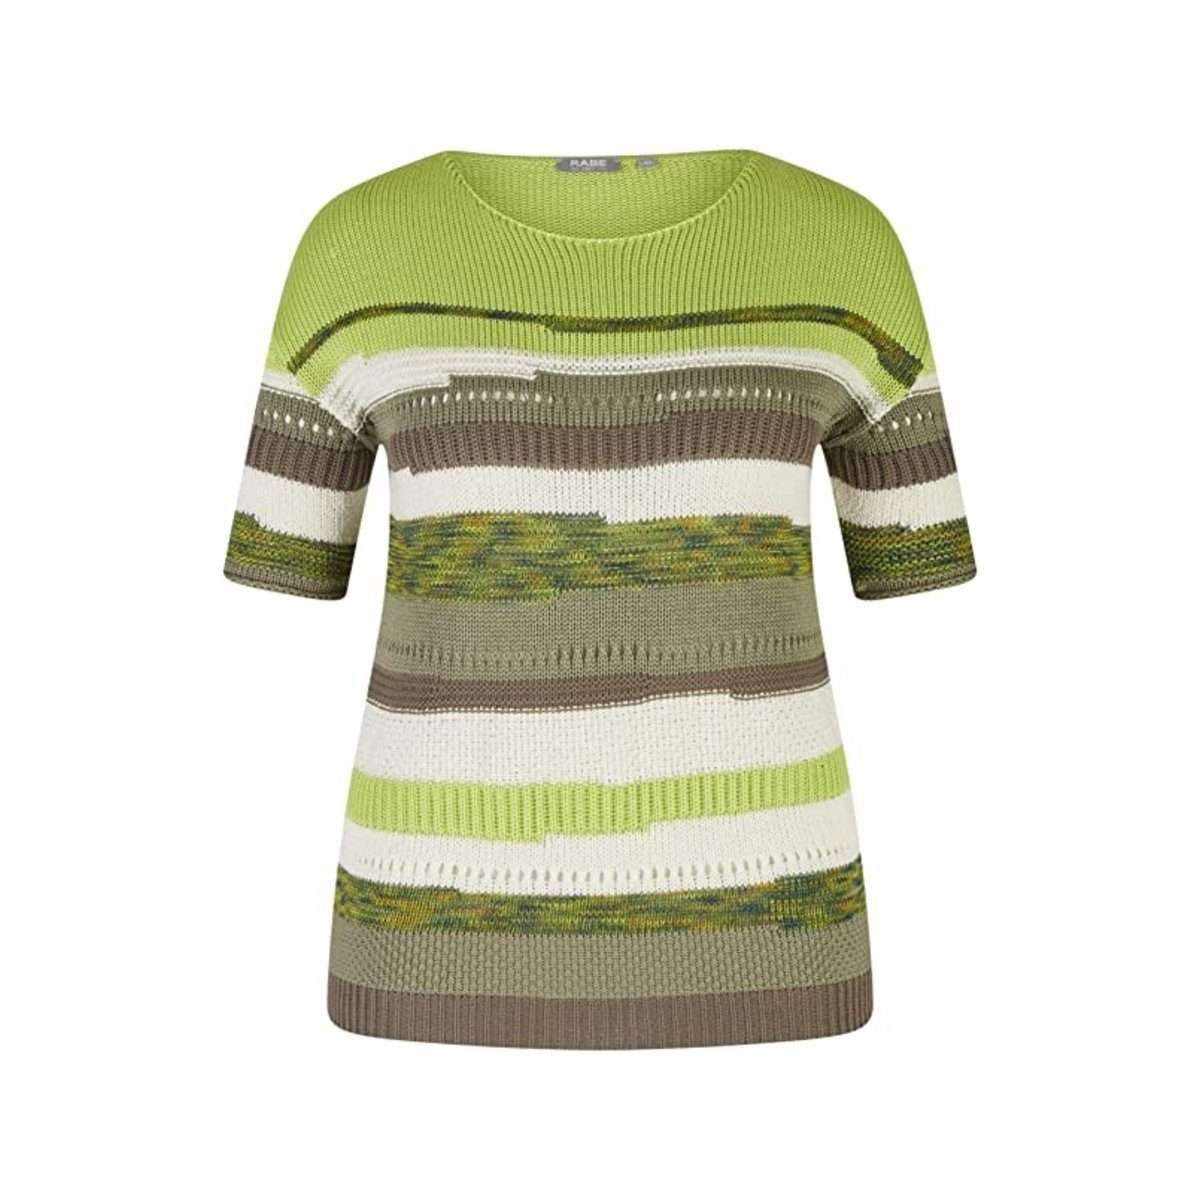 Длинный свитер зеленый (1 шт.)